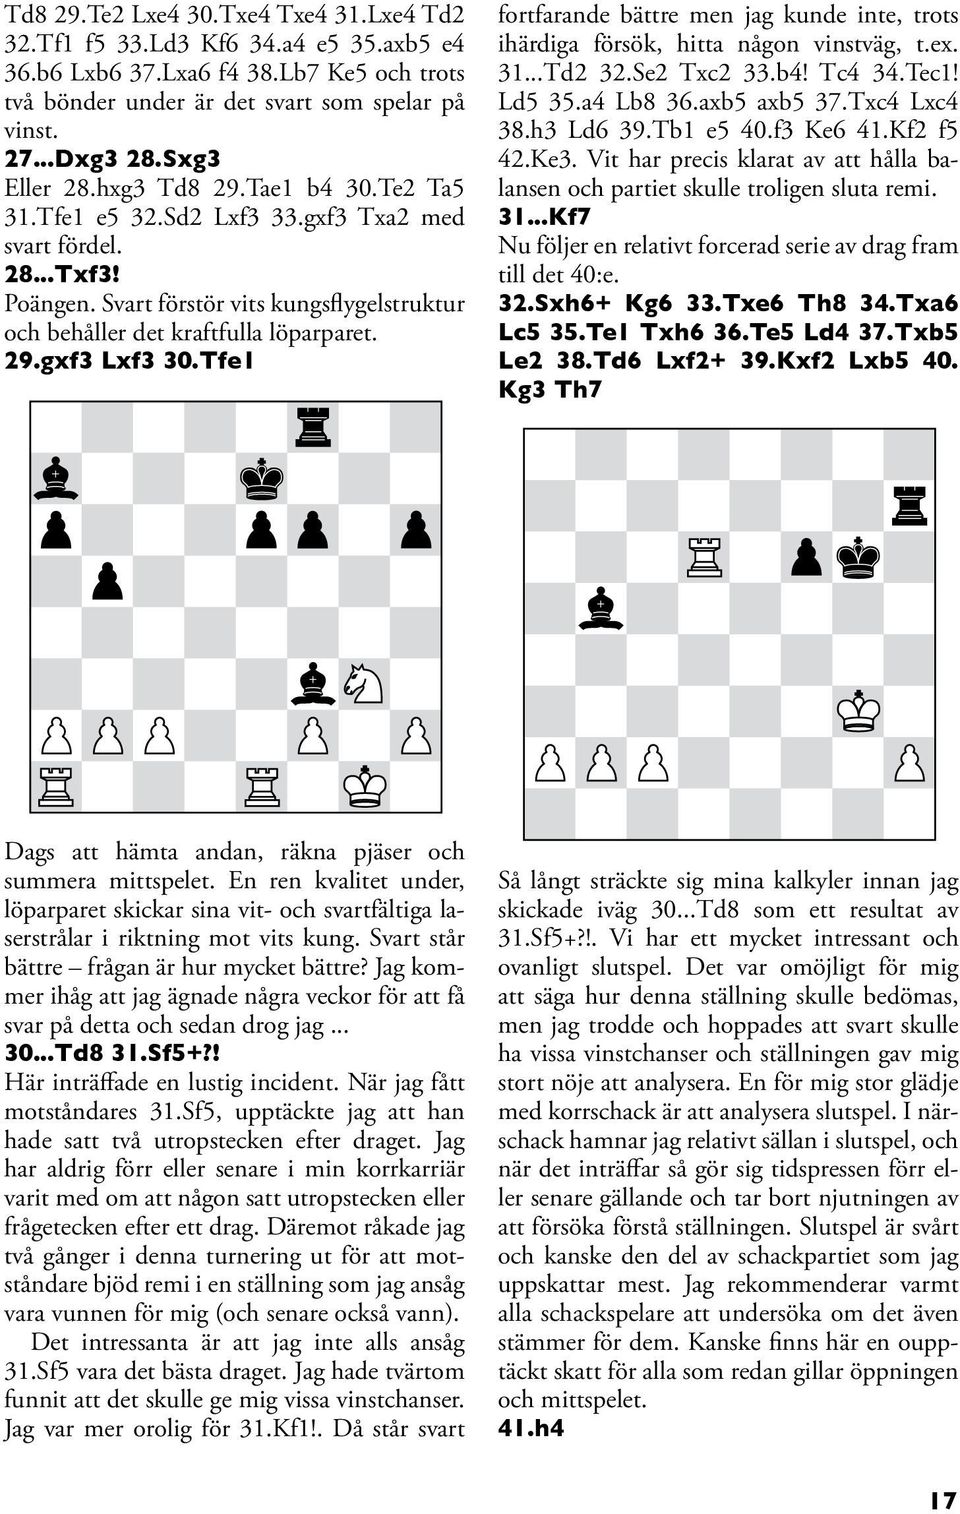 29.gxf3 Lxf3 30.Tfe1 fortfarande bättre men jag kunde inte, trots ihärdiga försök, hitta någon vinstväg, t.ex. 31...Td2 32.Se2 Txc2 33.b4! Tc4 34.Tec1! Ld5 35.a4 Lb8 36.axb5 axb5 37.Txc4 Lxc4 38.